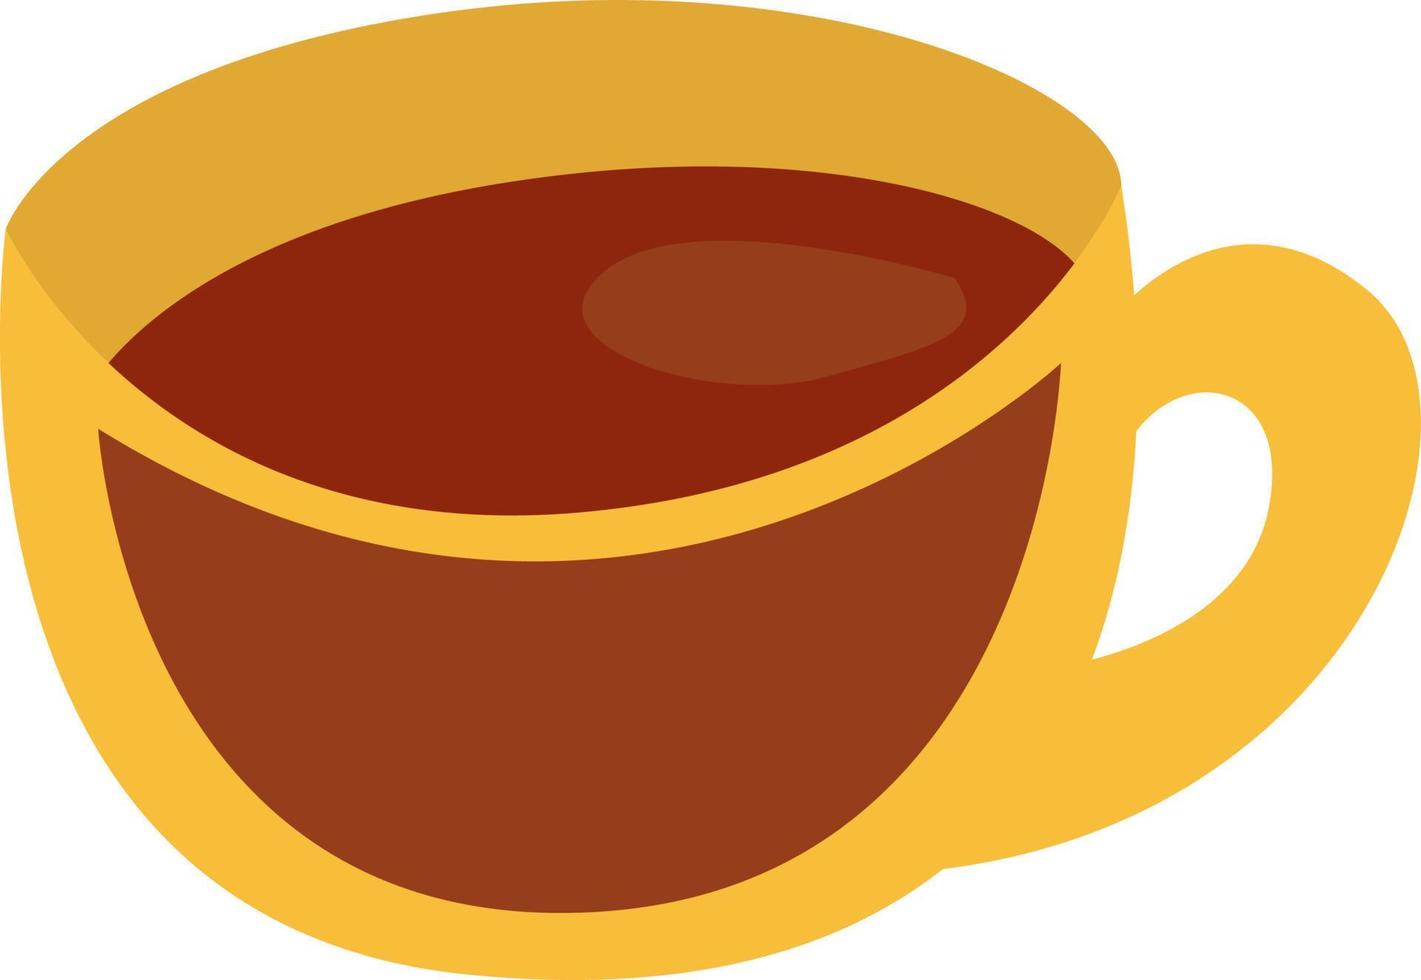 Frühstückskaffee in gelber Tasse, Illustration, Vektor auf weißem Hintergrund.